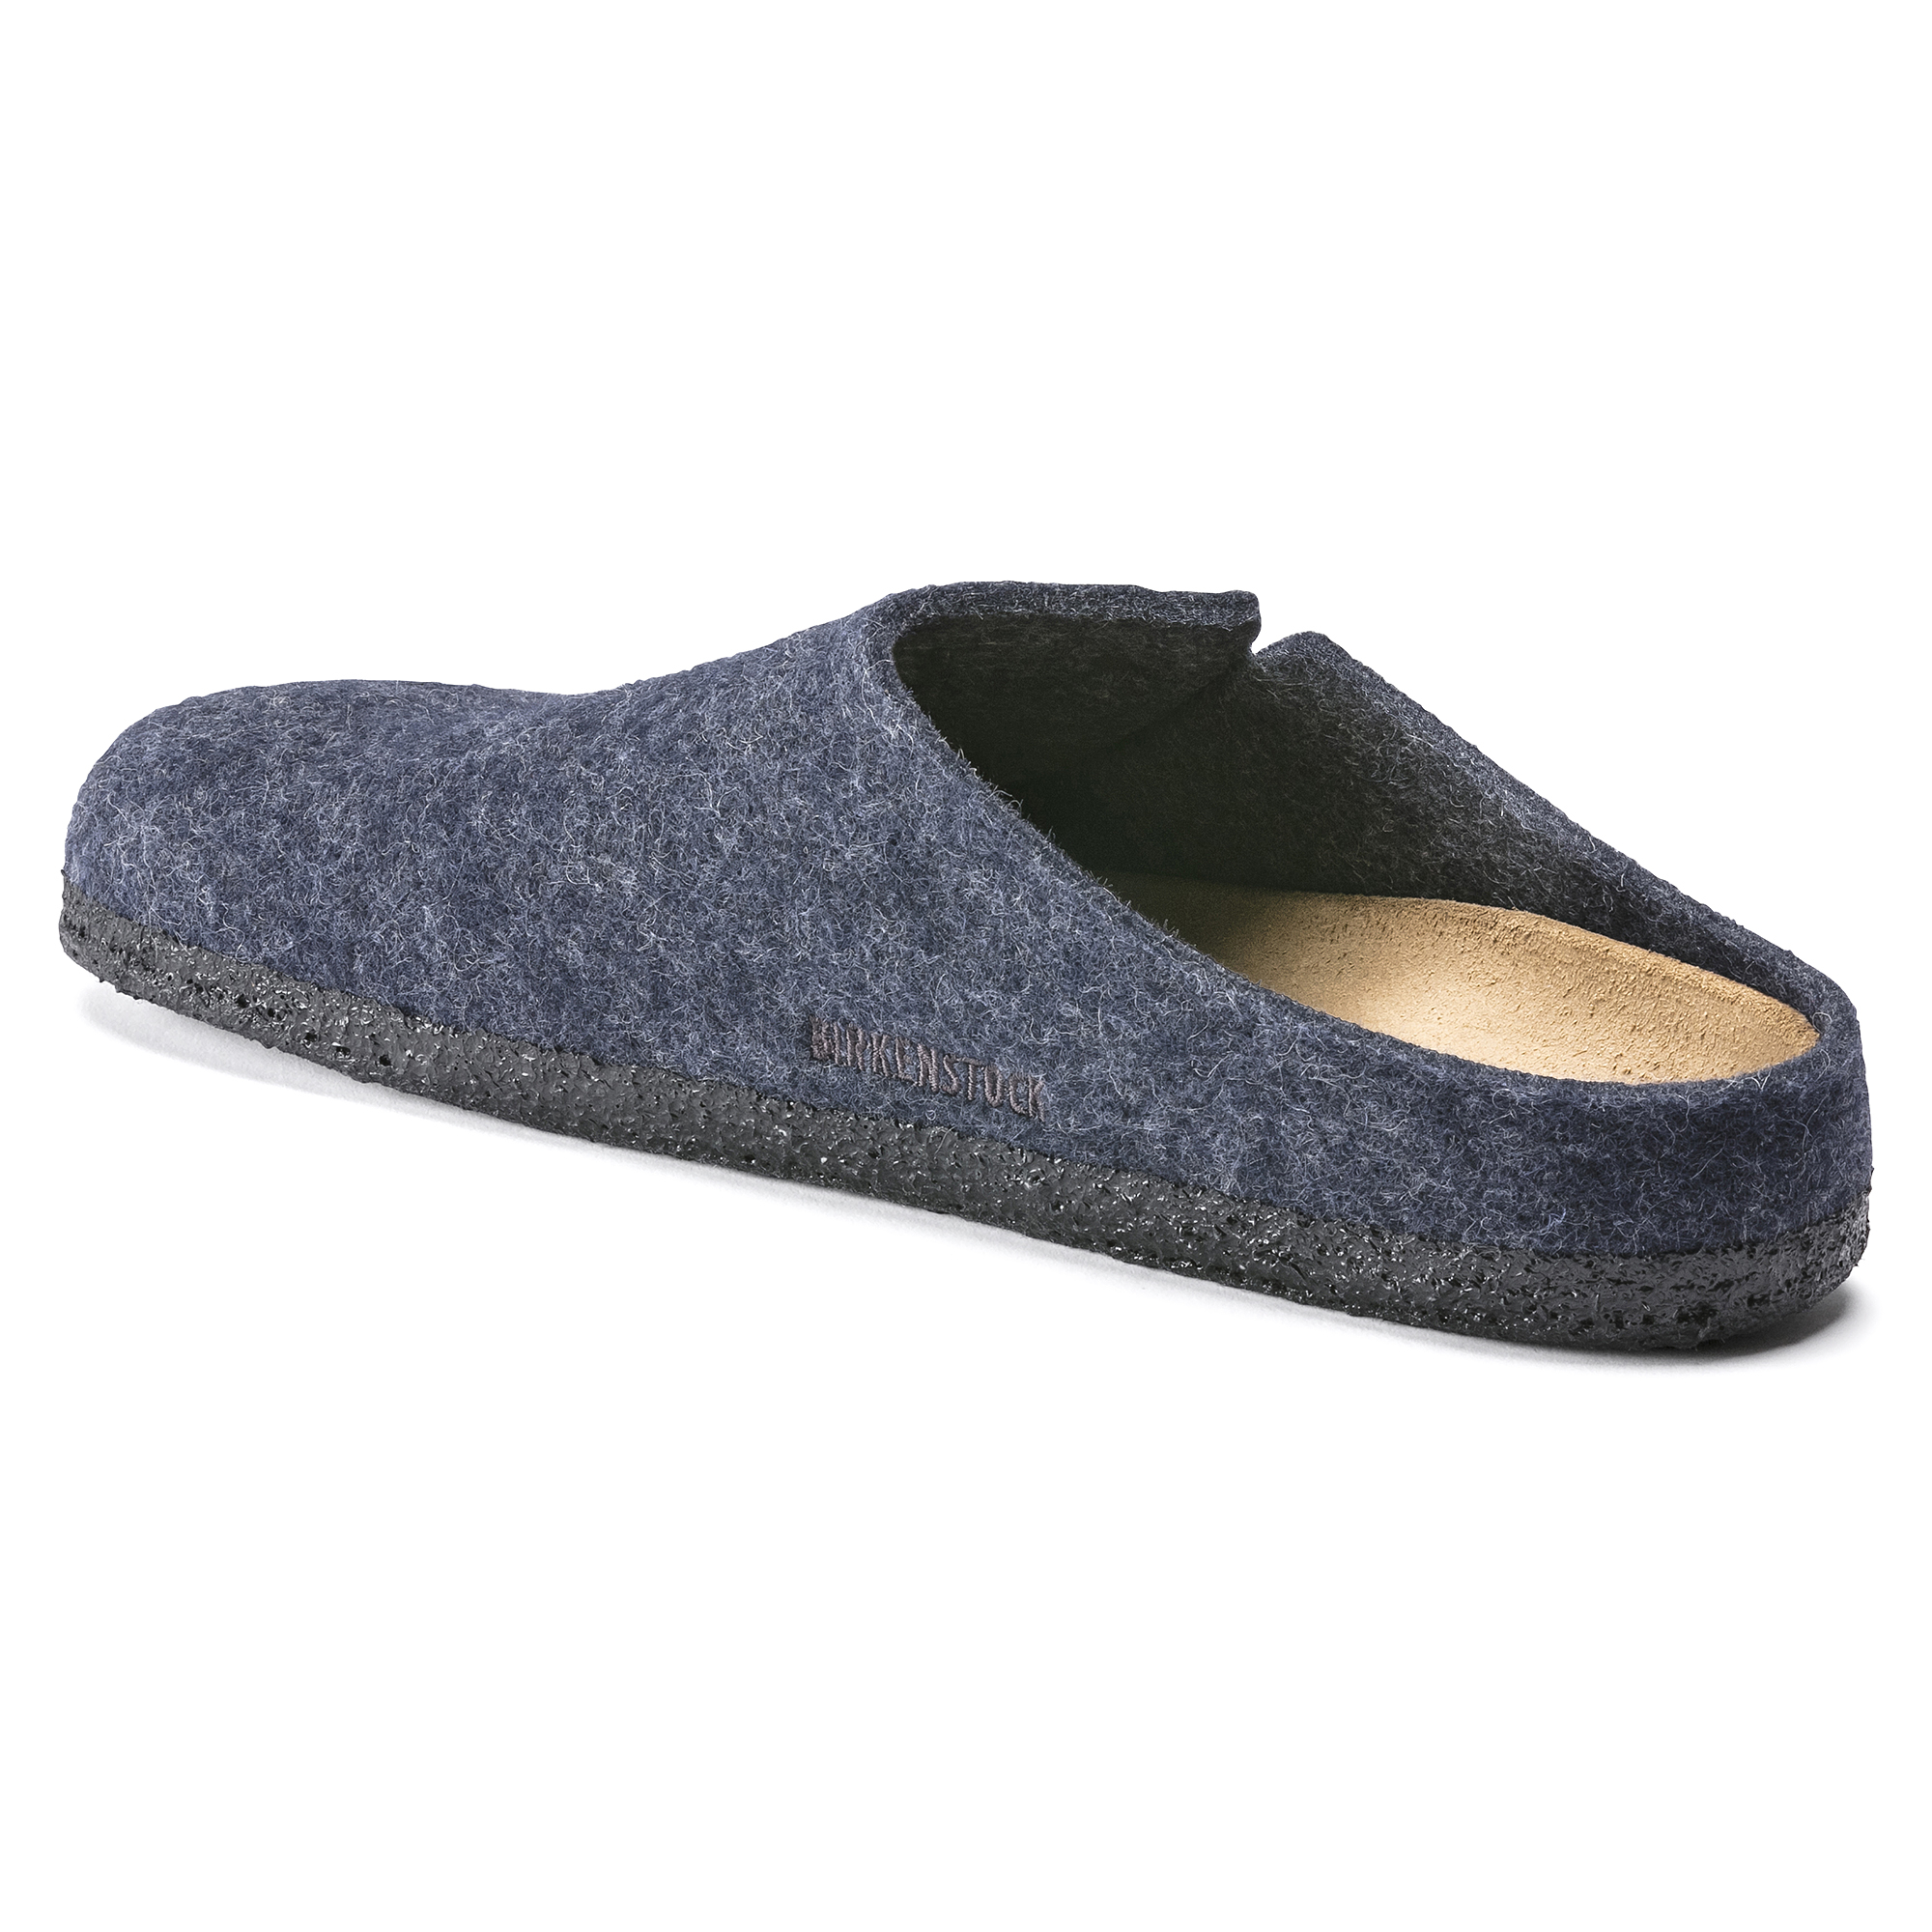 orhto health hawai slipper from Lakhani